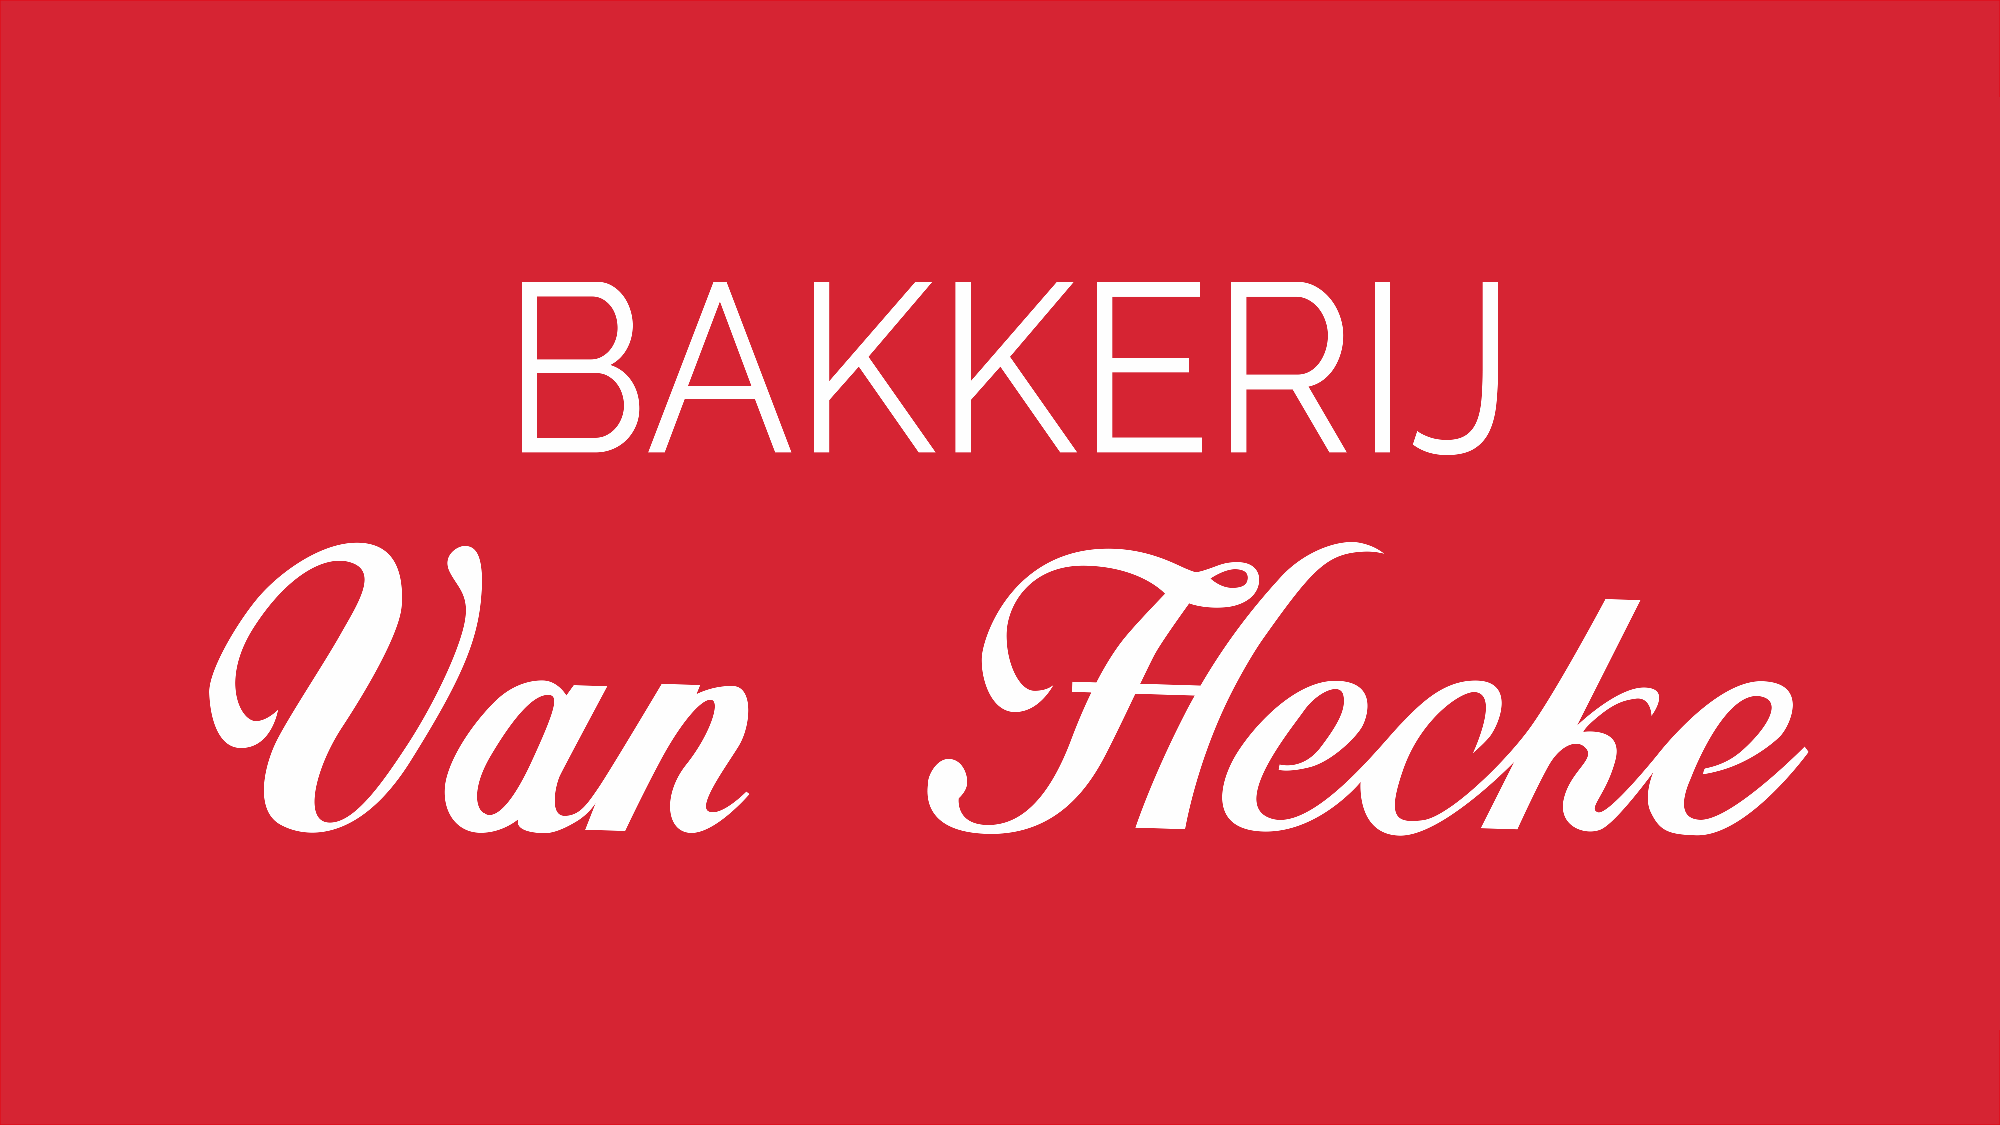 Bakkerij Van Hecke logo